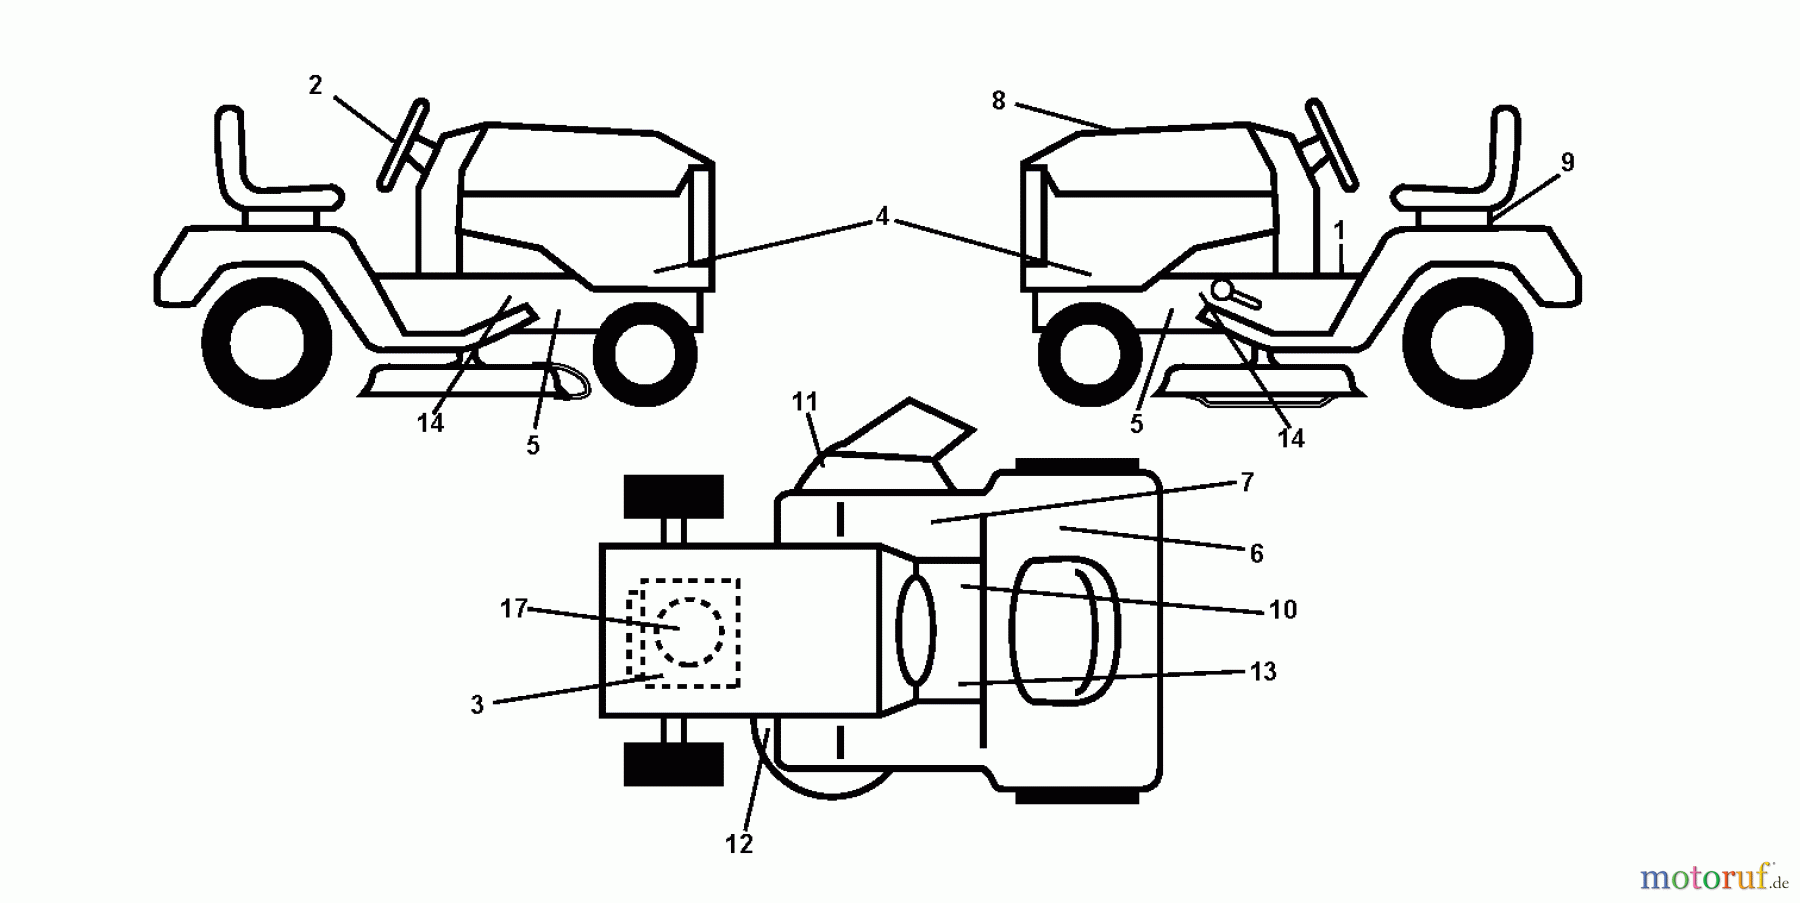  Jonsered Rasen  und Garten Traktoren LT2213 CA (96041015500) - Jonsered Lawn & Garden Tractor (2010-01) DECALS